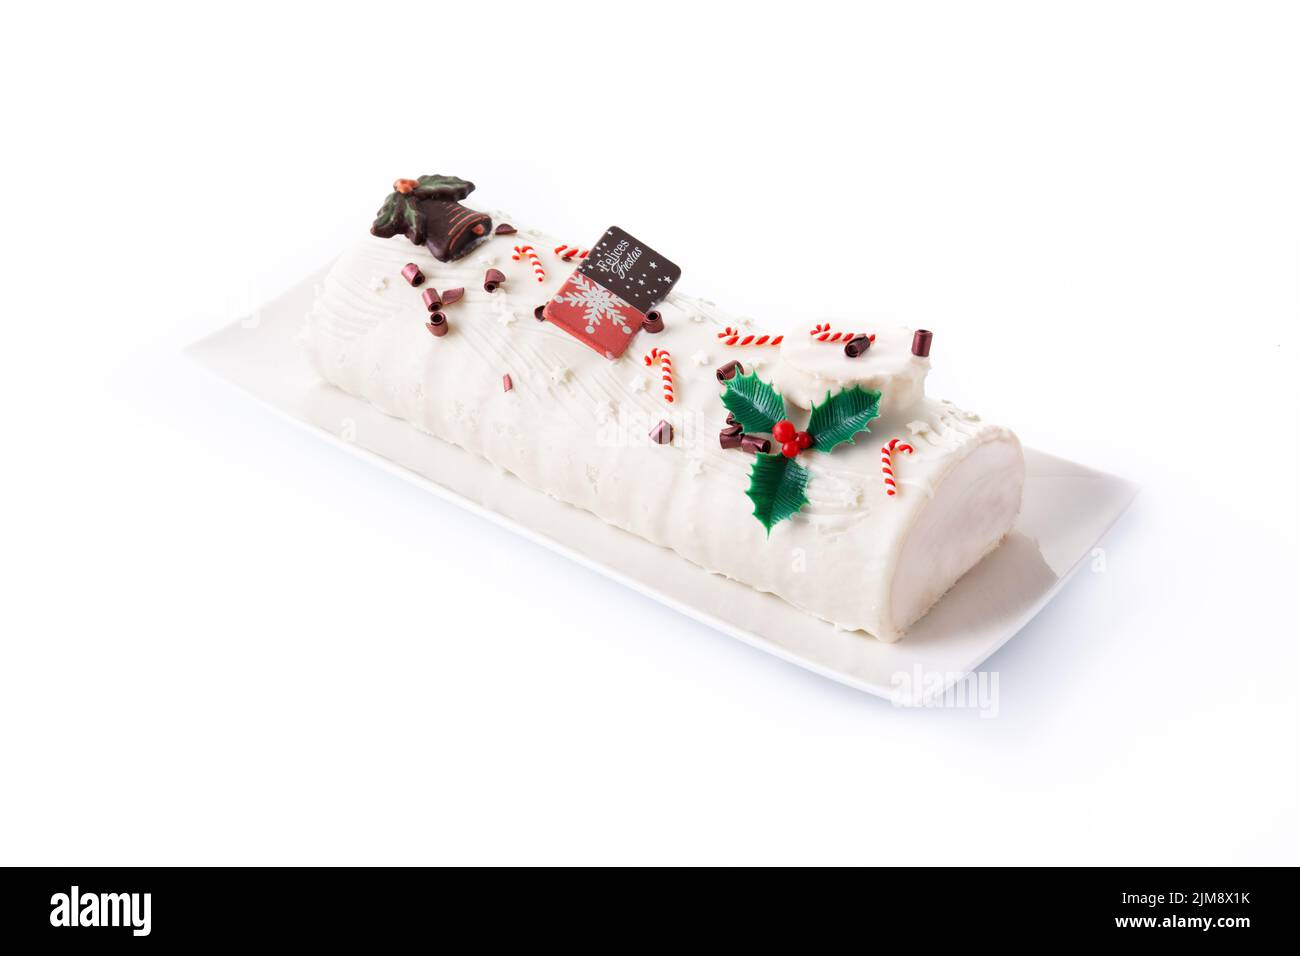 White chocolate yule log cake isolated on white background Stock Photo